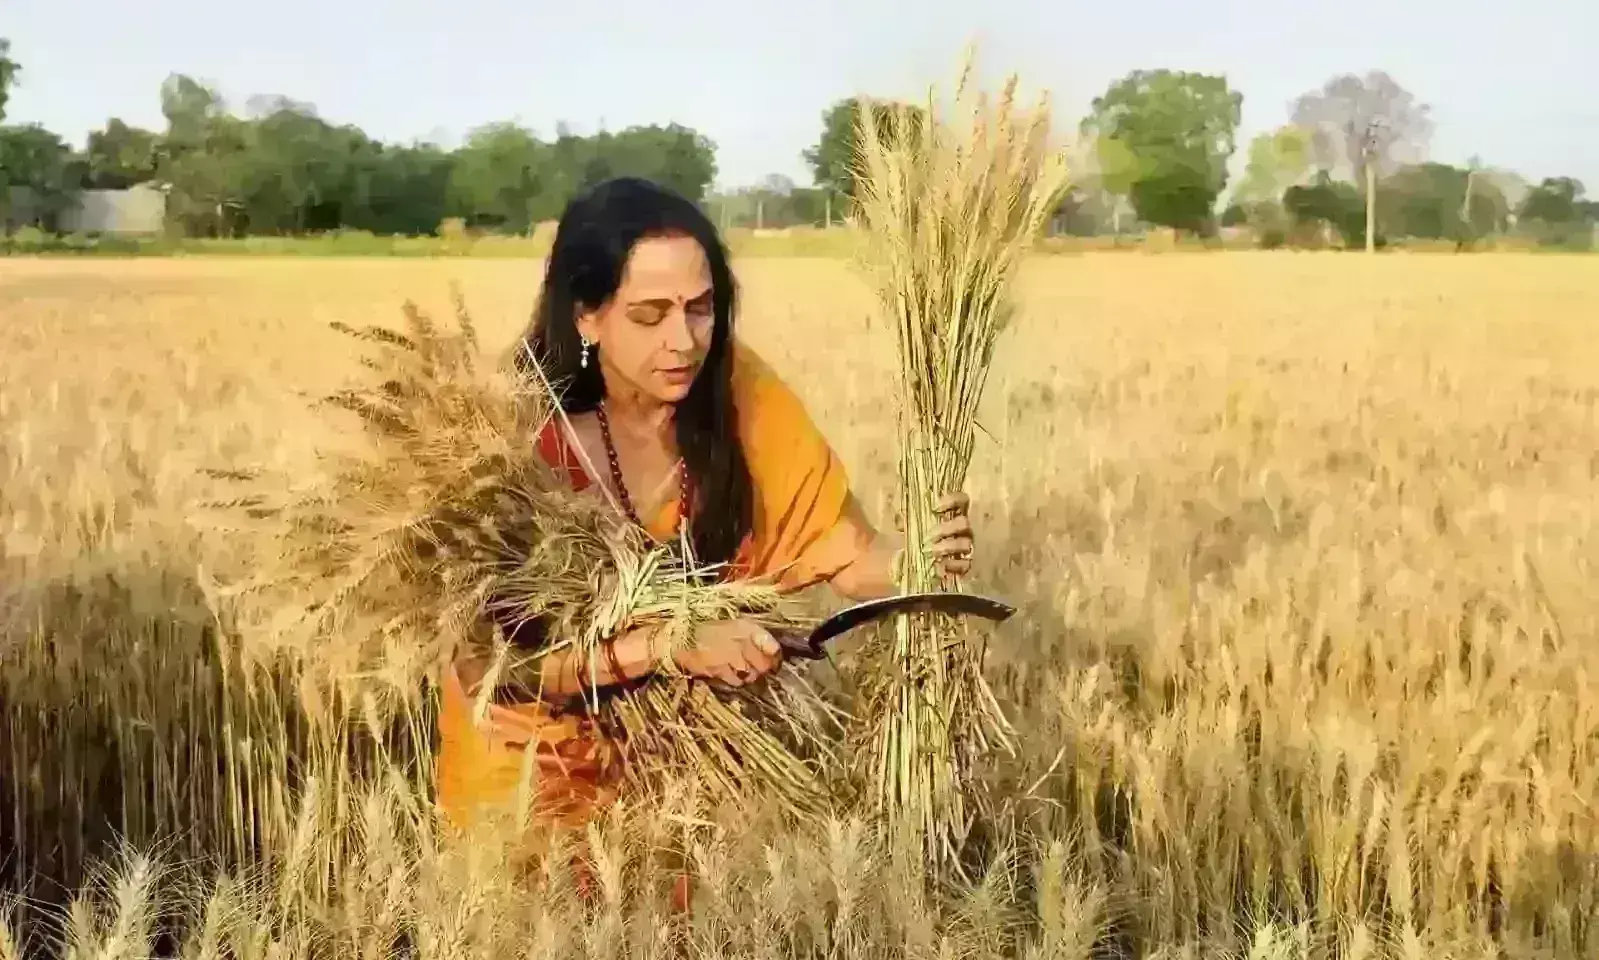 तपती धूप में हाथ में हंसुआ लेकर खेतों में पहुंची हेमा मालिनी, महिला किसानों संग काटा गेहूं